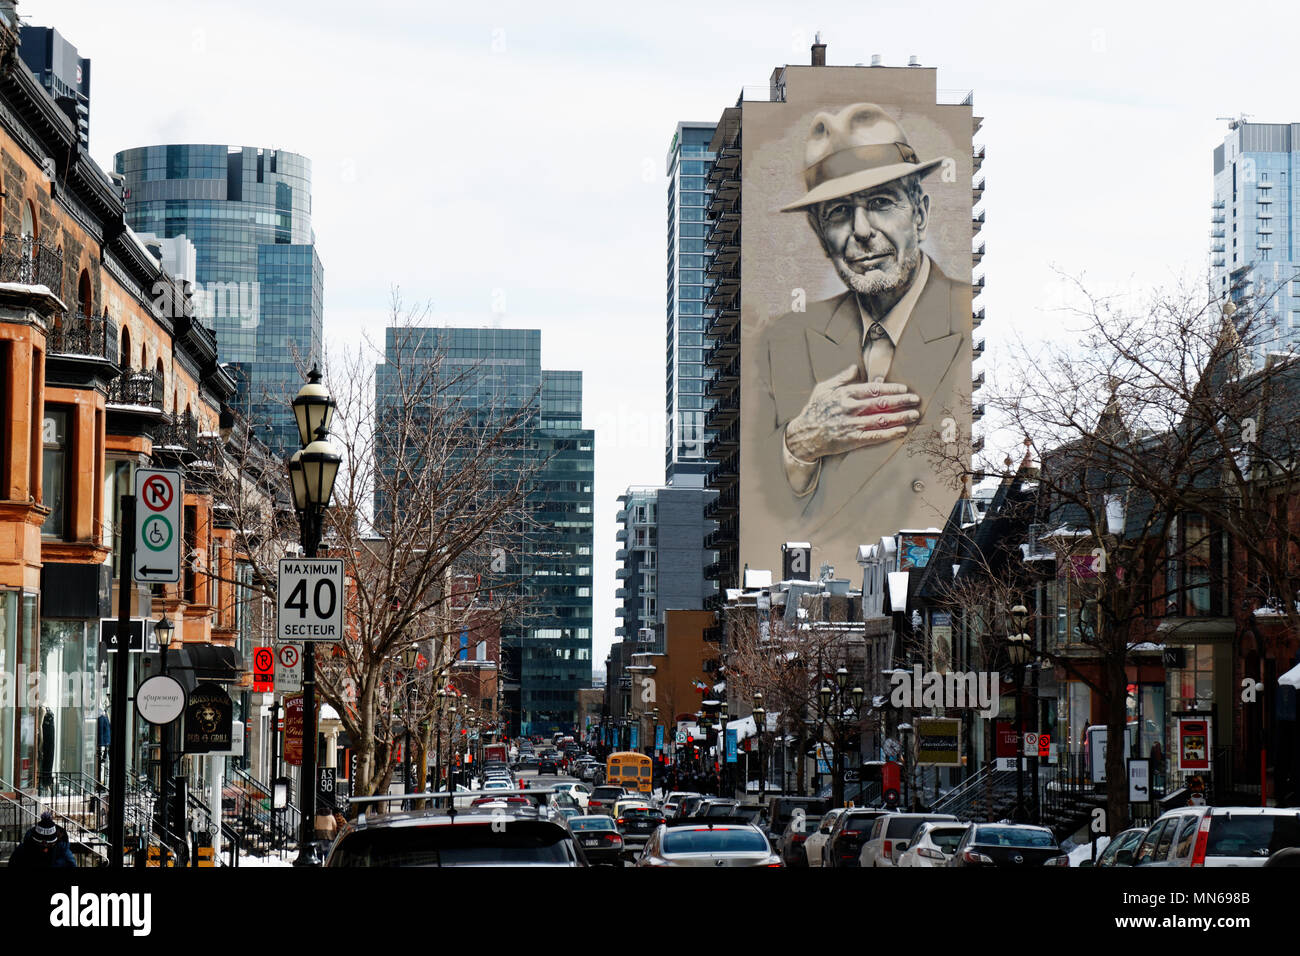 Un portrait de Leonard Cohen peint sur le côté d'un immeuble à Montréal, Québec, Canada Banque D'Images